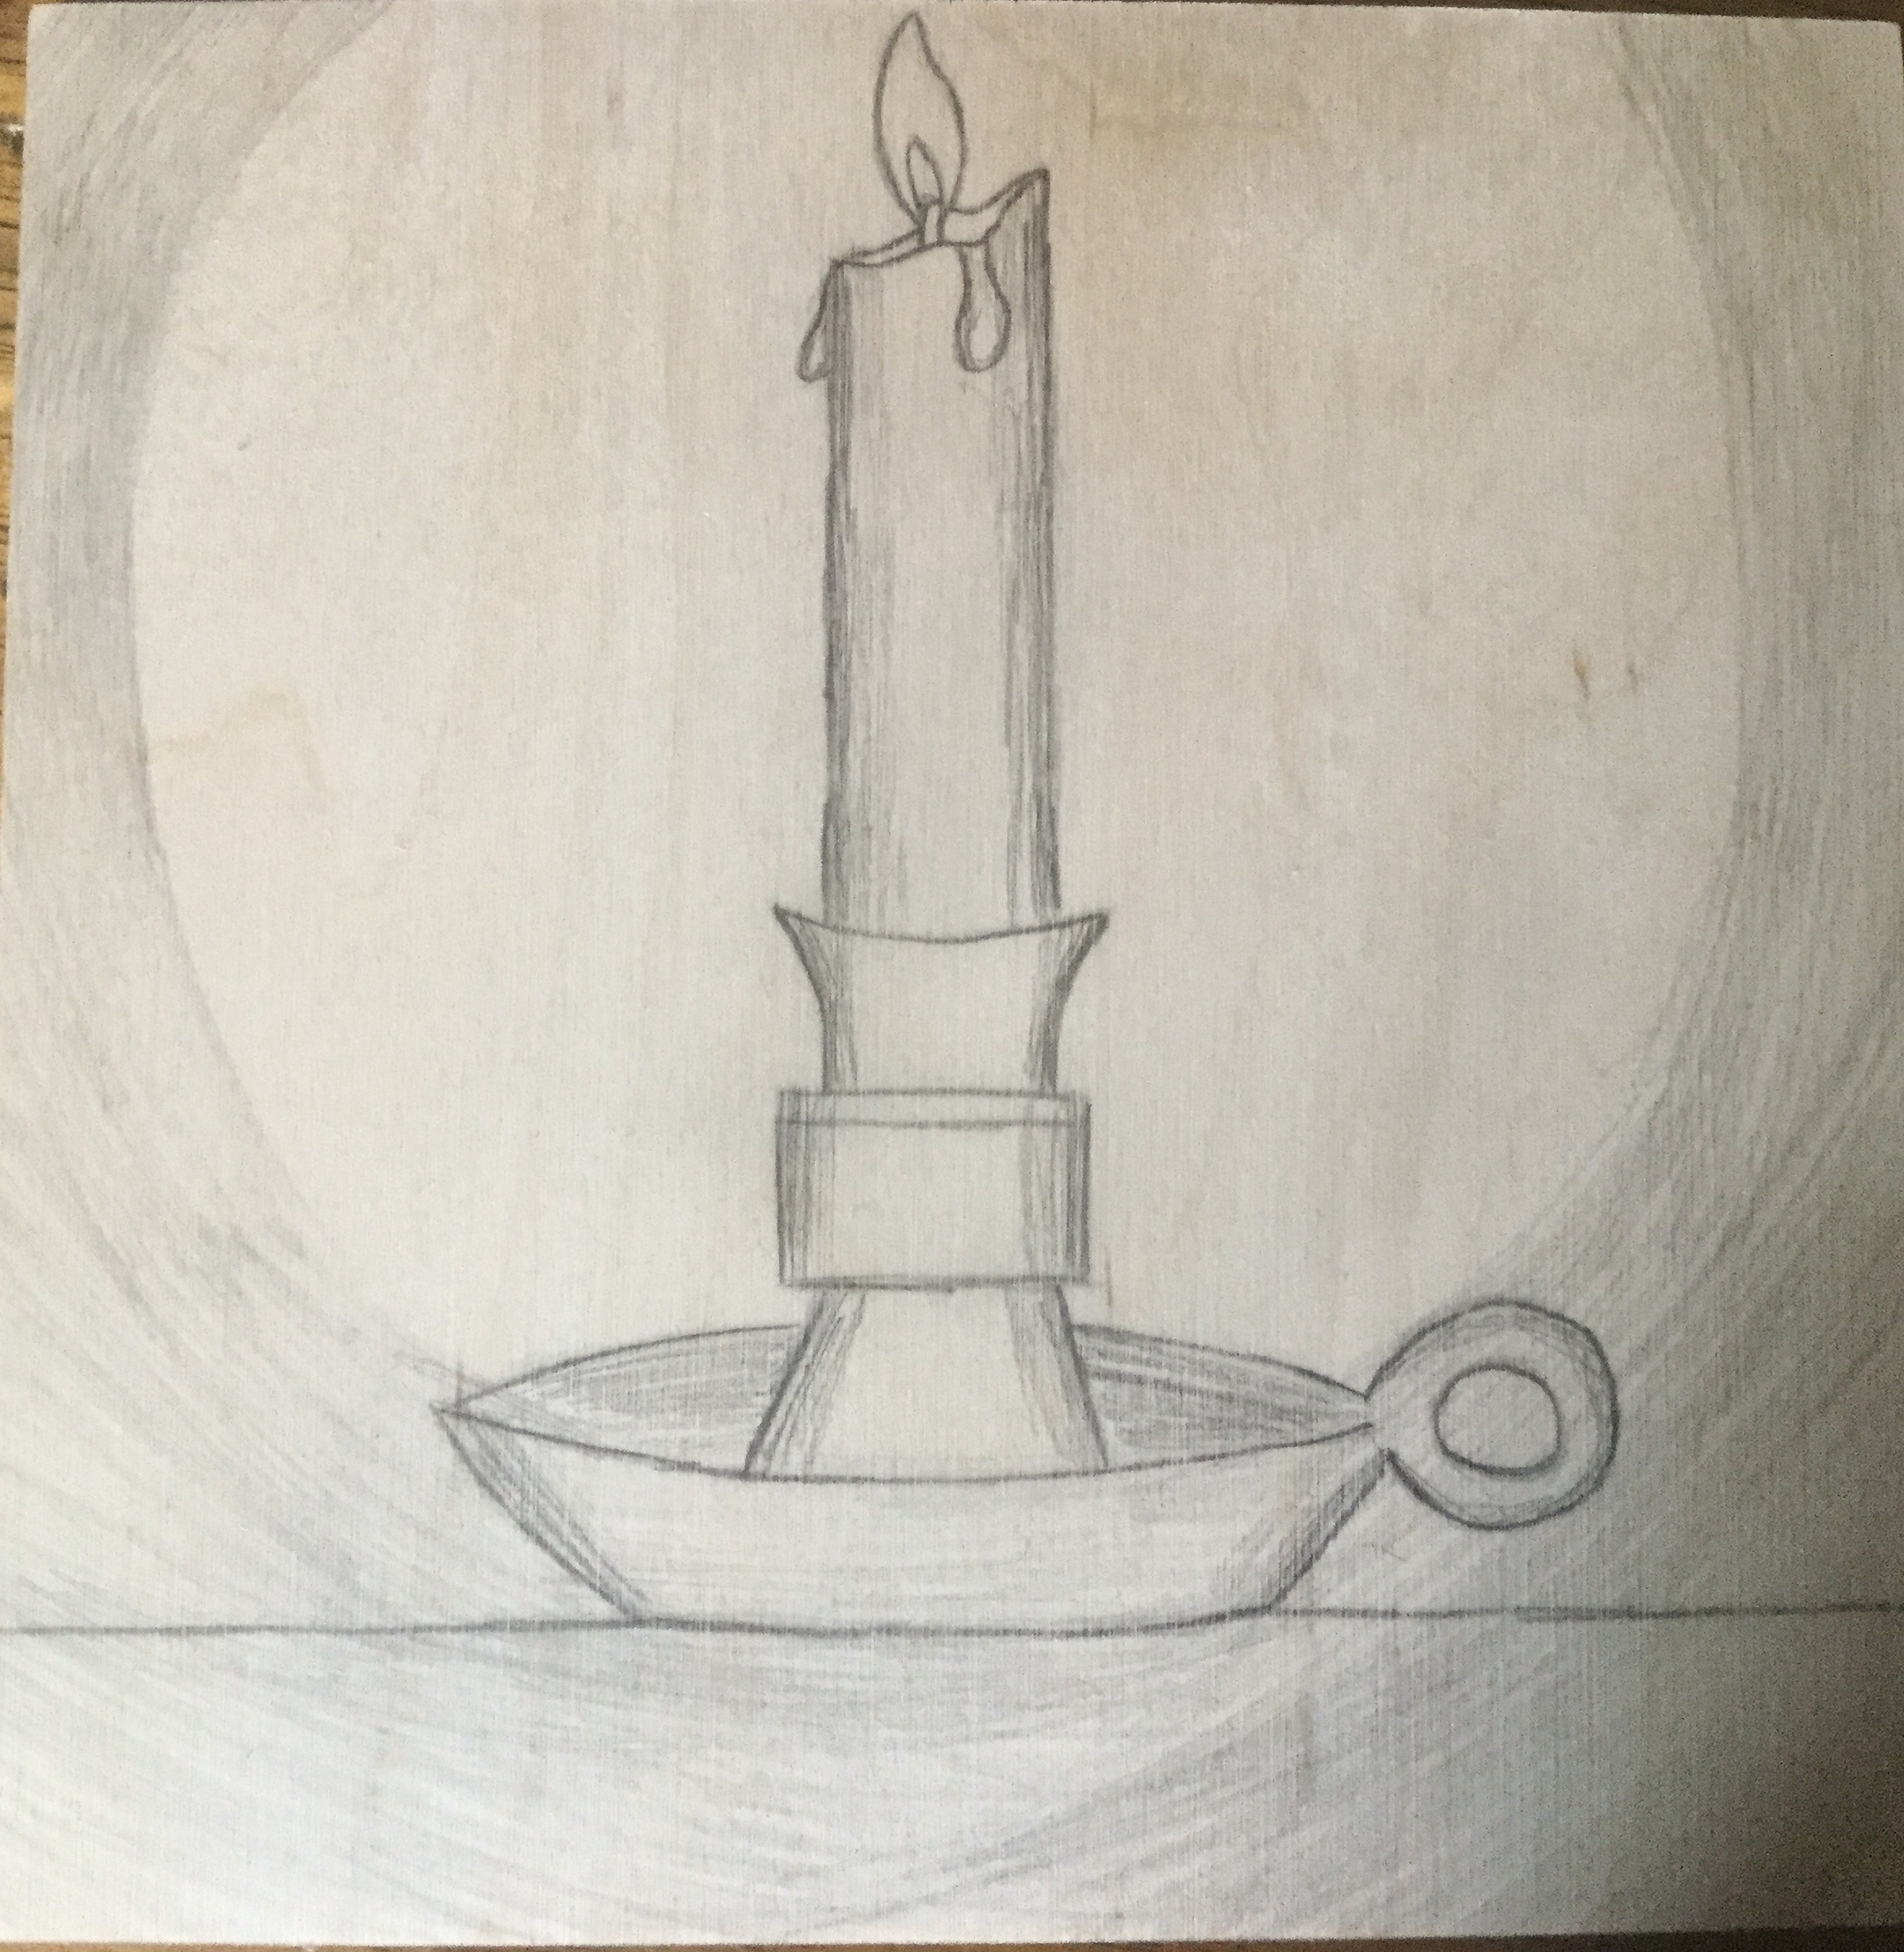 Candle on wood